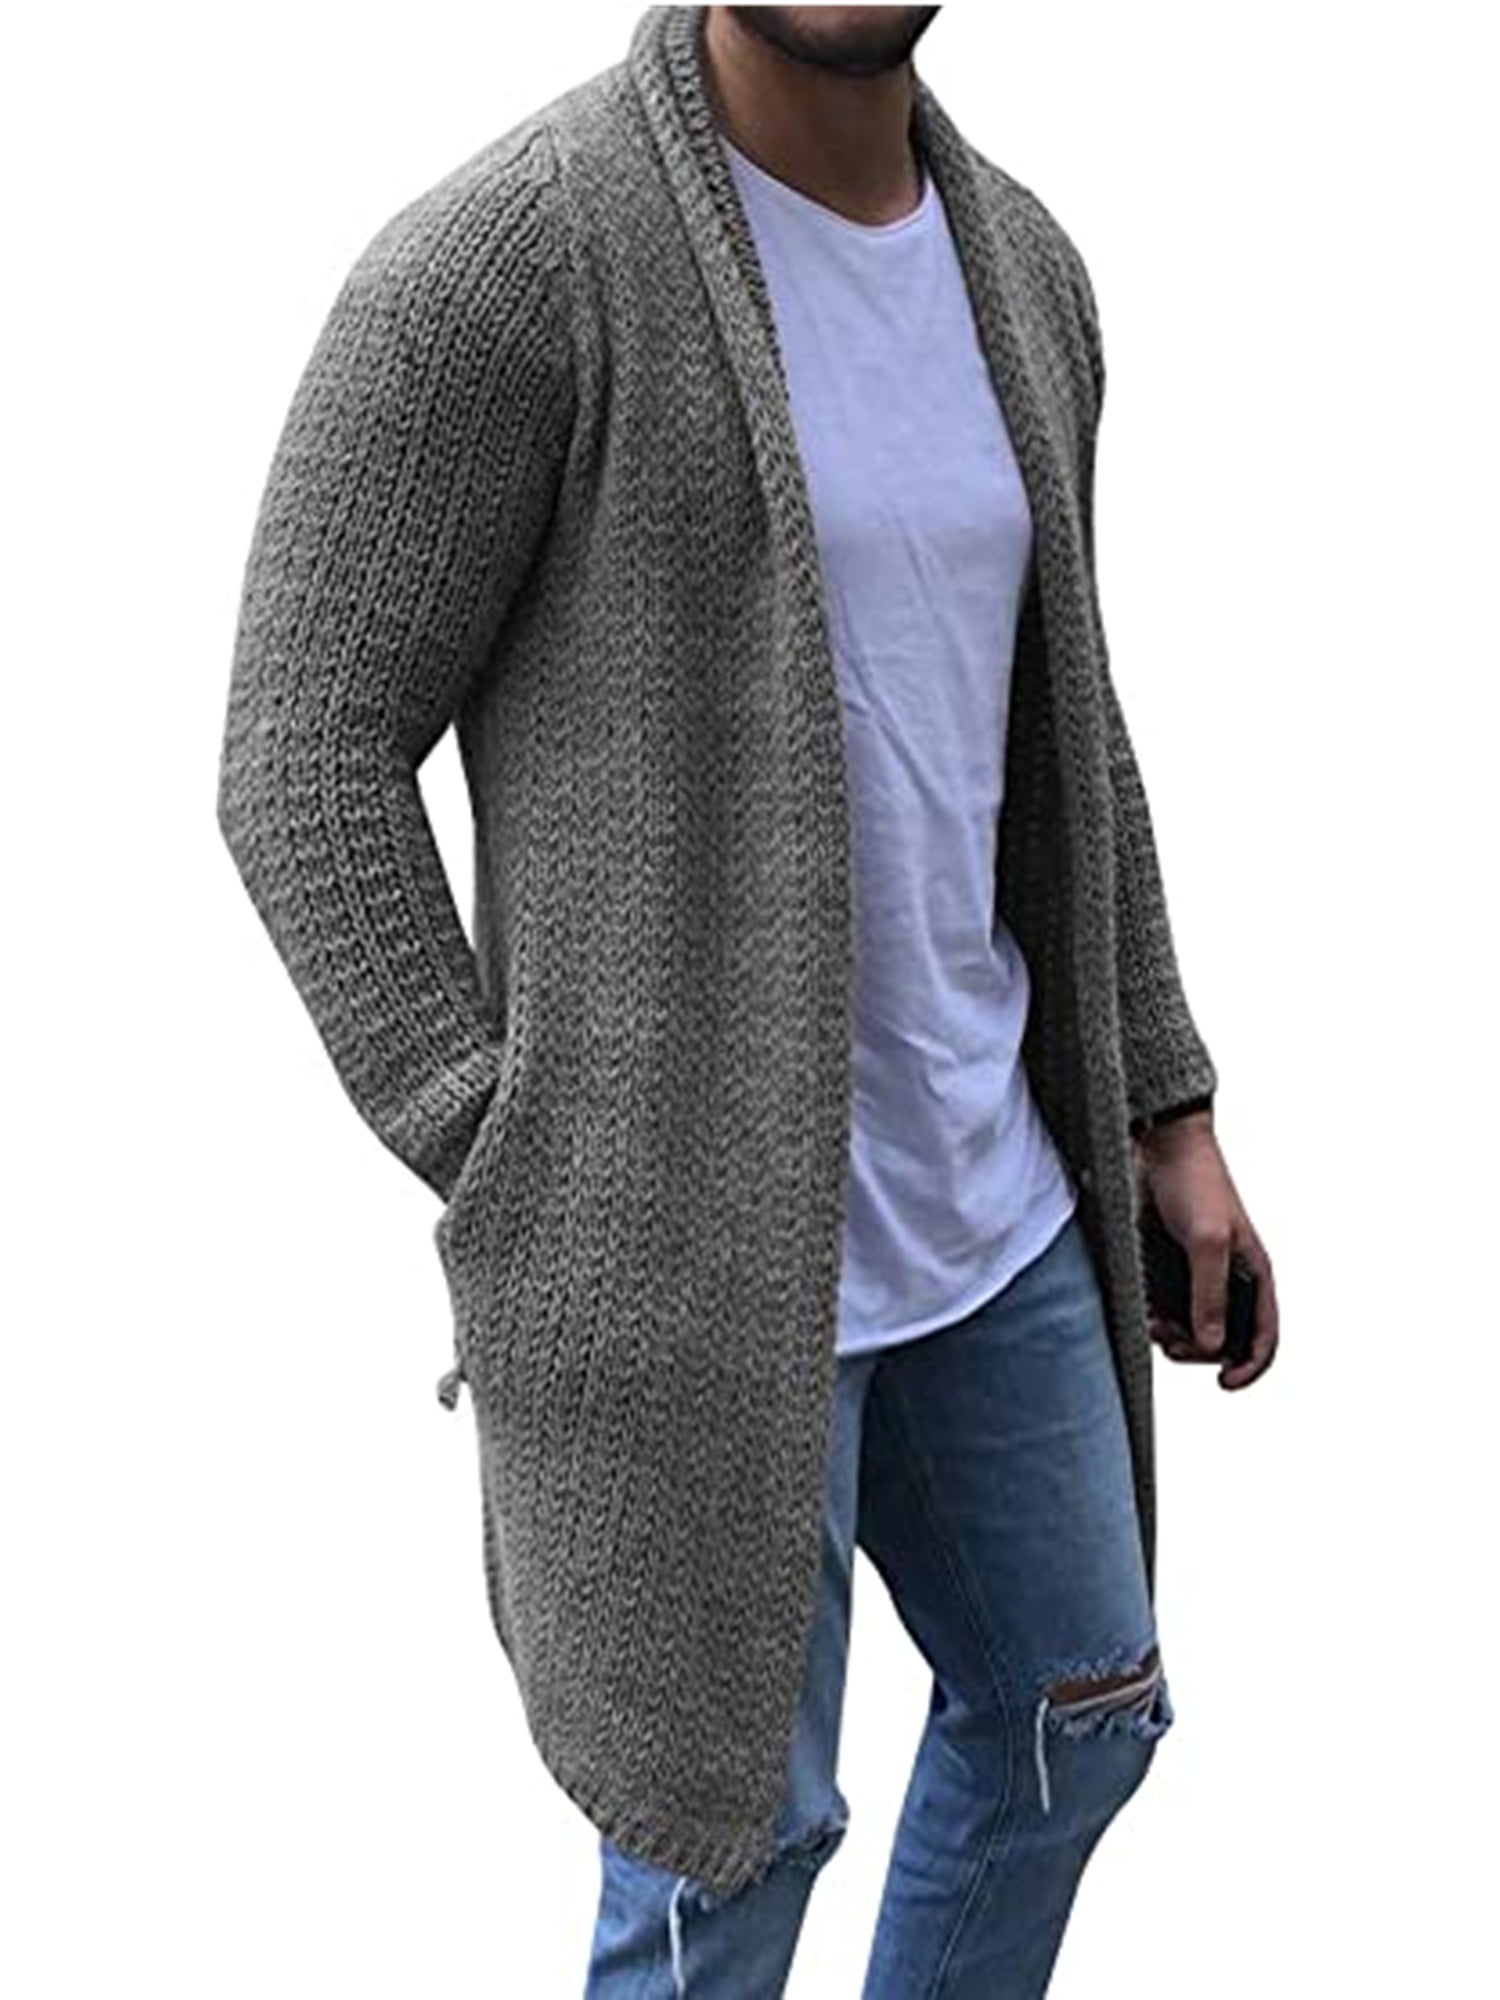 GRMO Men Winter Open Front Lapel Long Sleeve Pockets Knit Sweater Cardigan 